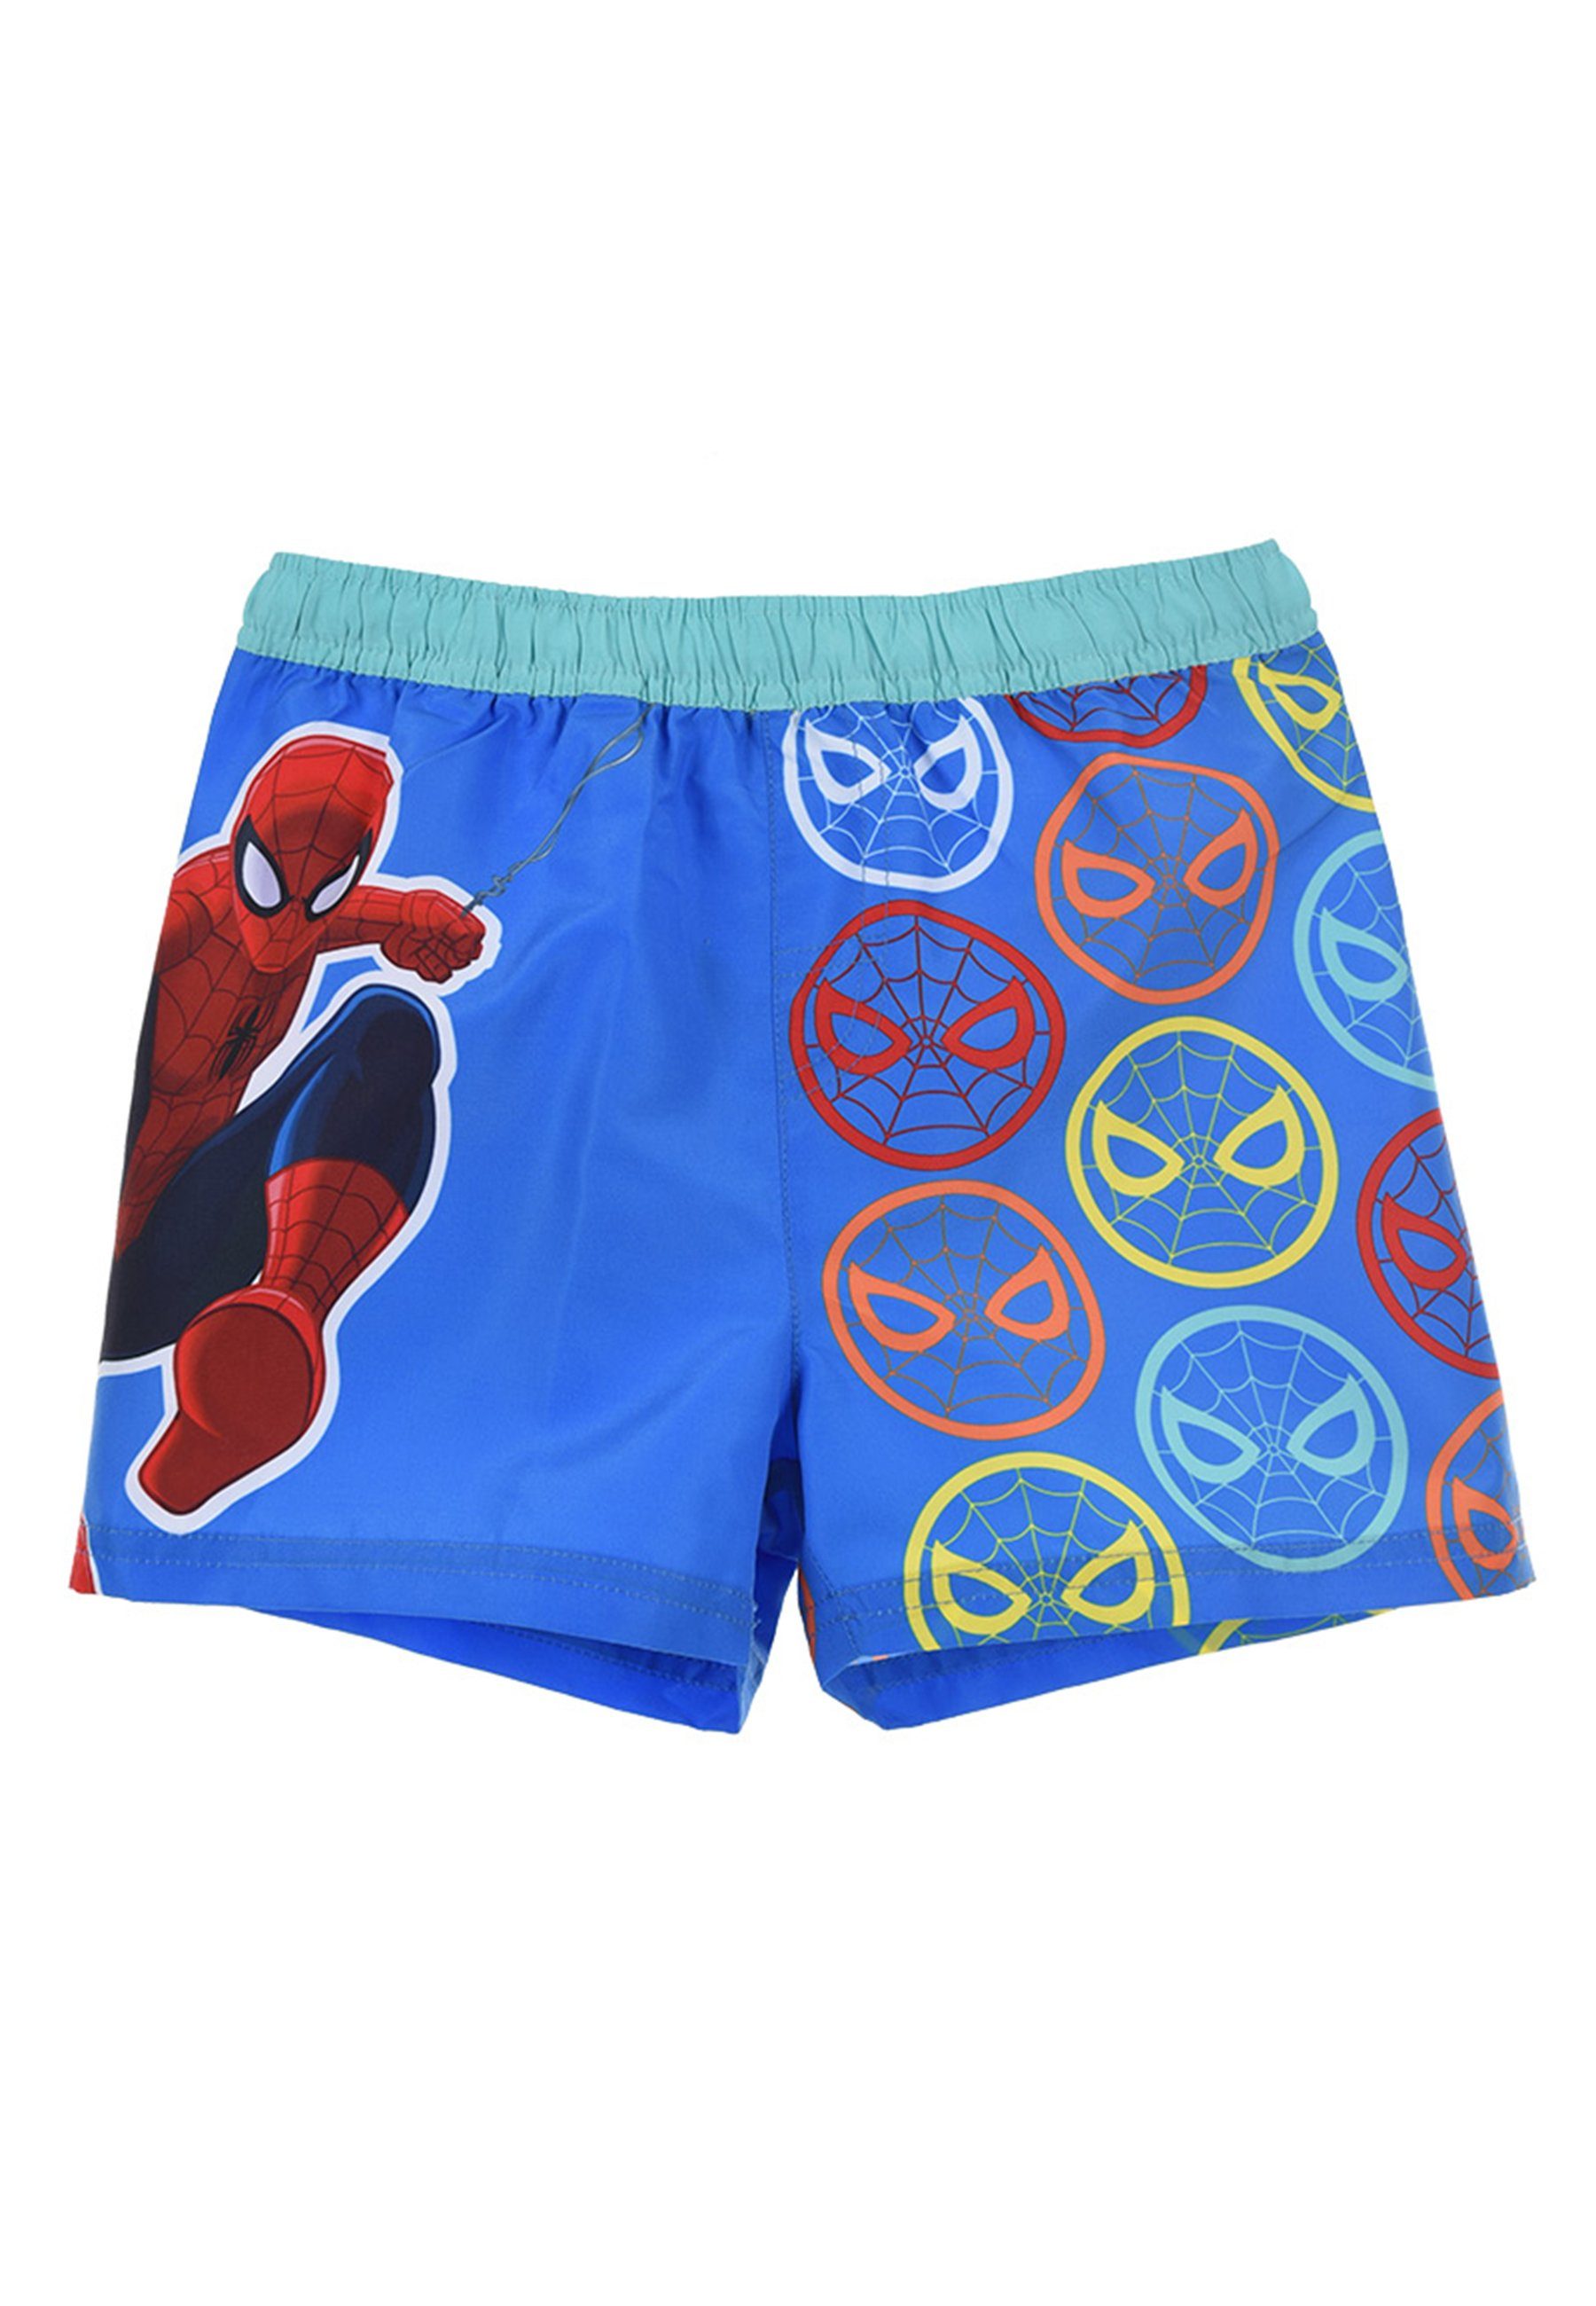 Spiderman Badeshorts Marvel Badepants Bermuda-Shorts Kinder Jungen Blau Badehose